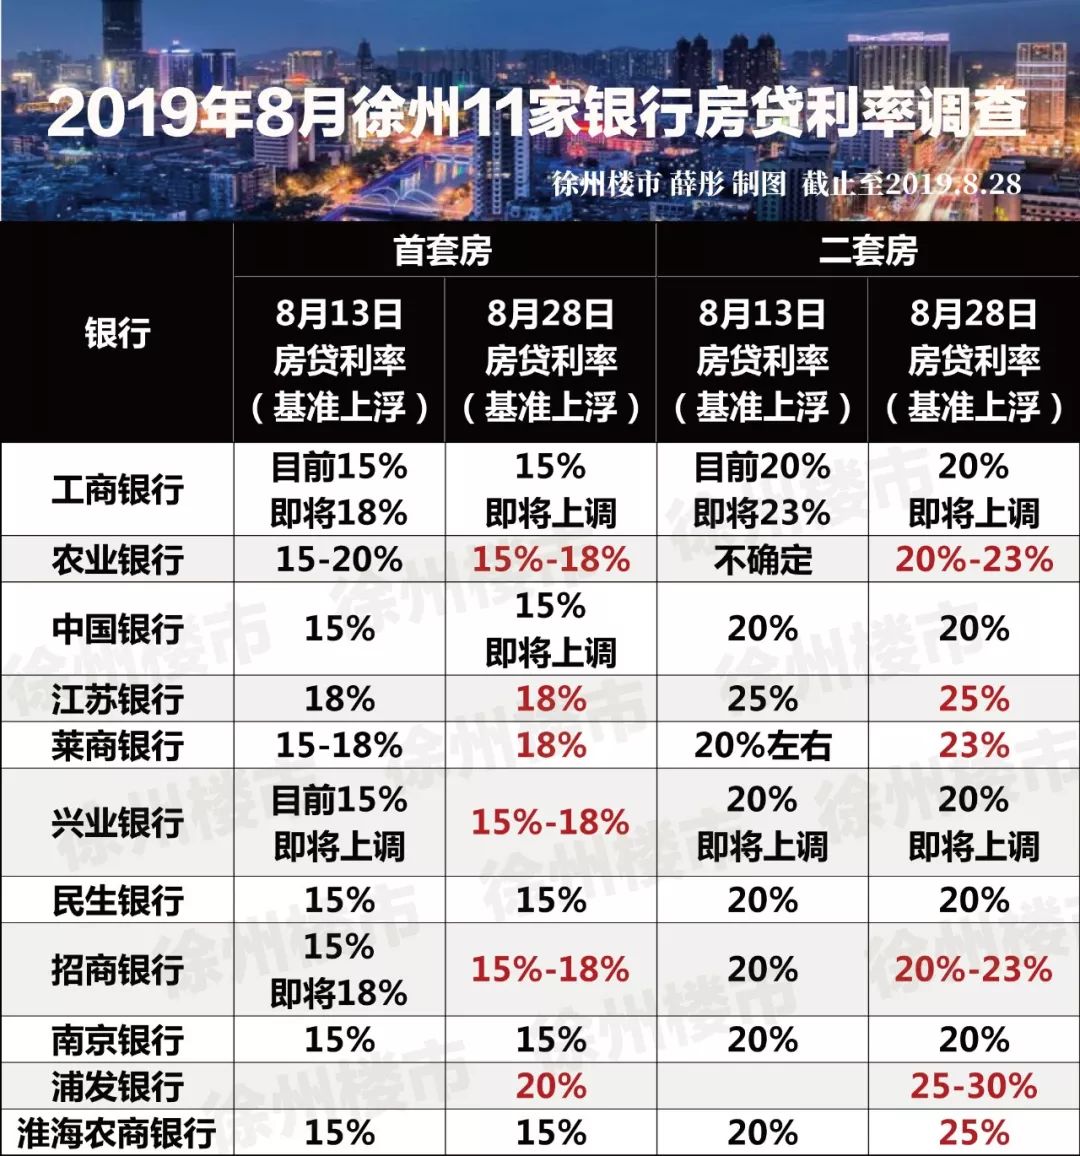 欲哭无泪！徐州房贷利率全面上调，首套房最高上浮20%